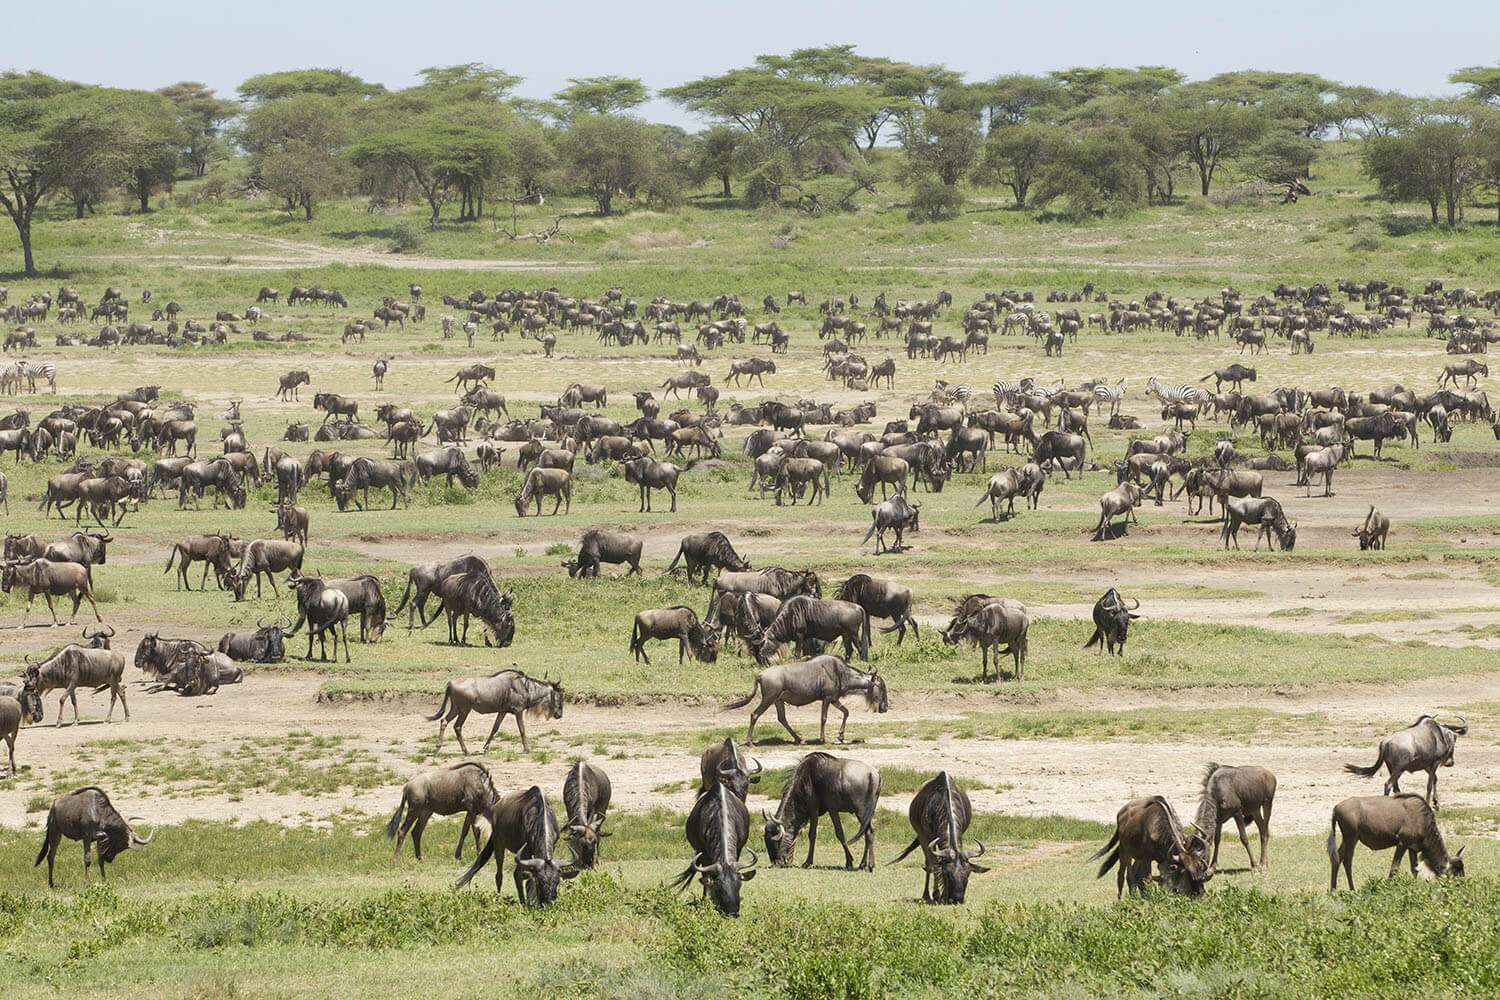 Wildebeest in plains